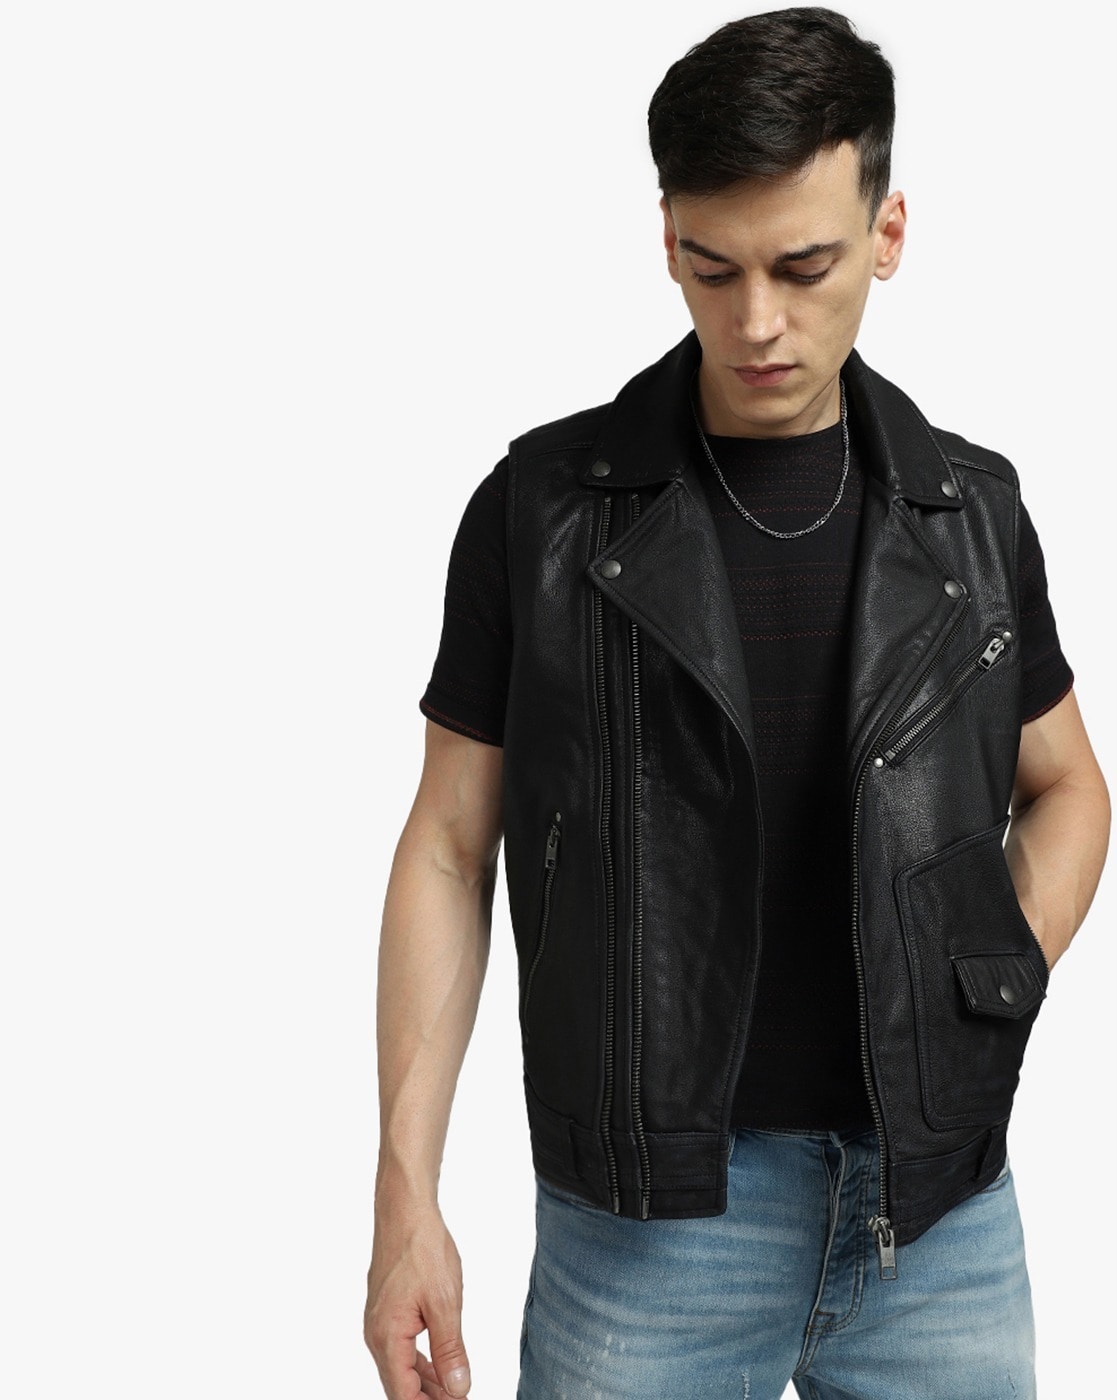 Punk Sleeveless Black Leather Jacket Studded for Men Motorbike Black  Distressed Leather Jacket - Etsy